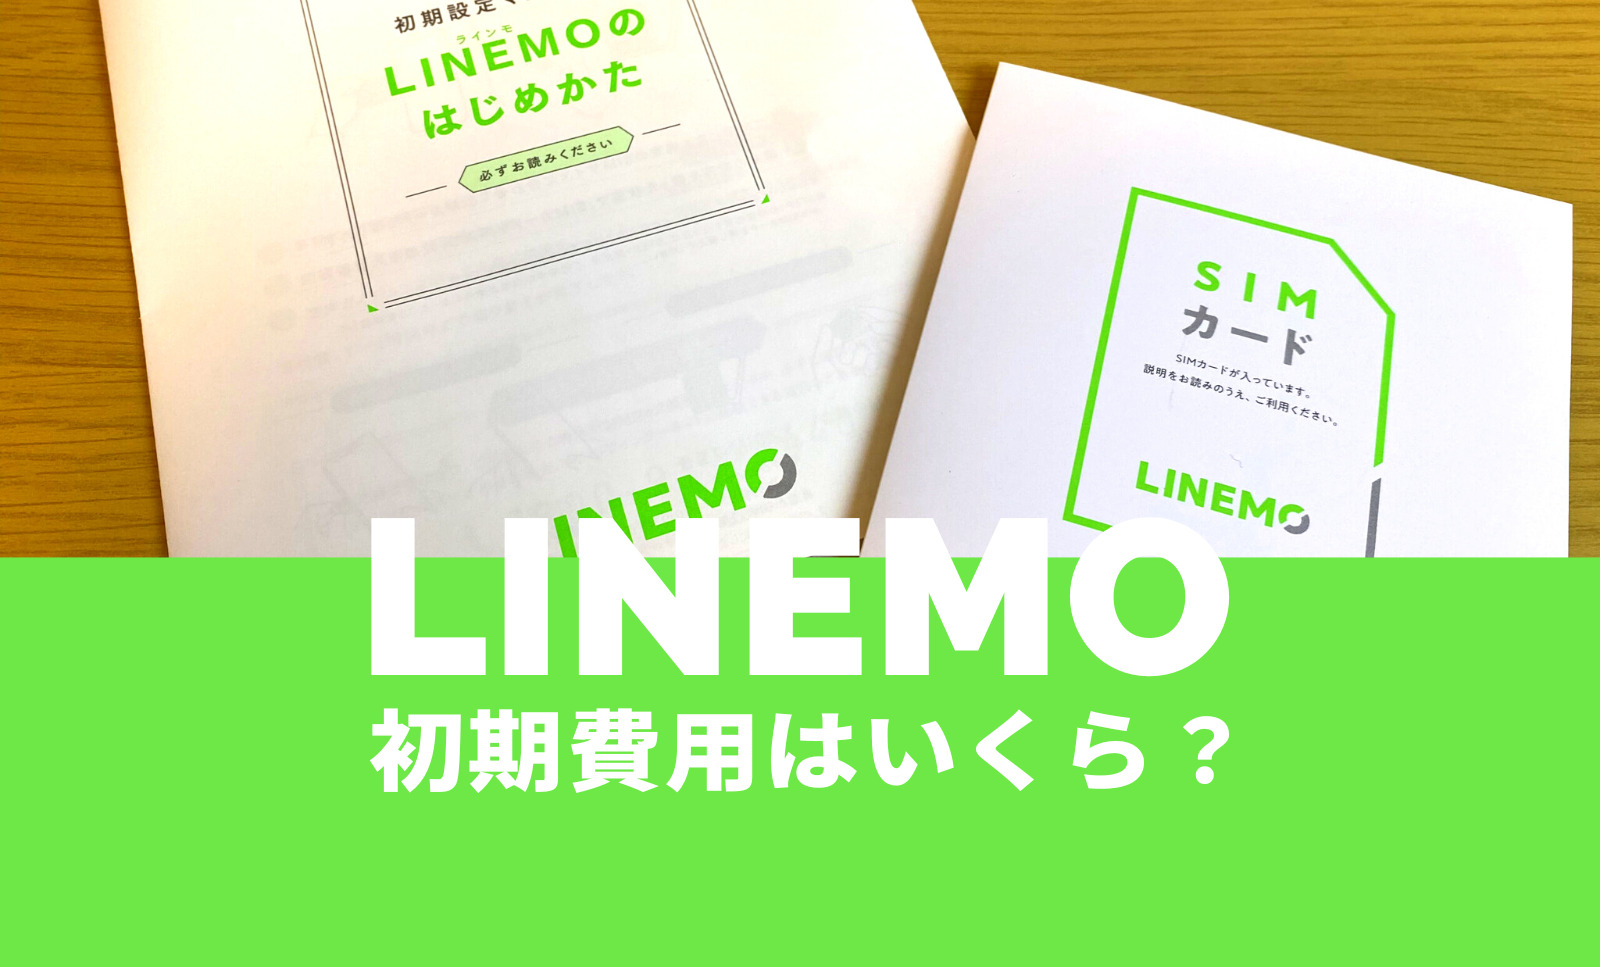 LINEMO(ラインモ)で初期費用はいくらになるか解説のサムネイル画像